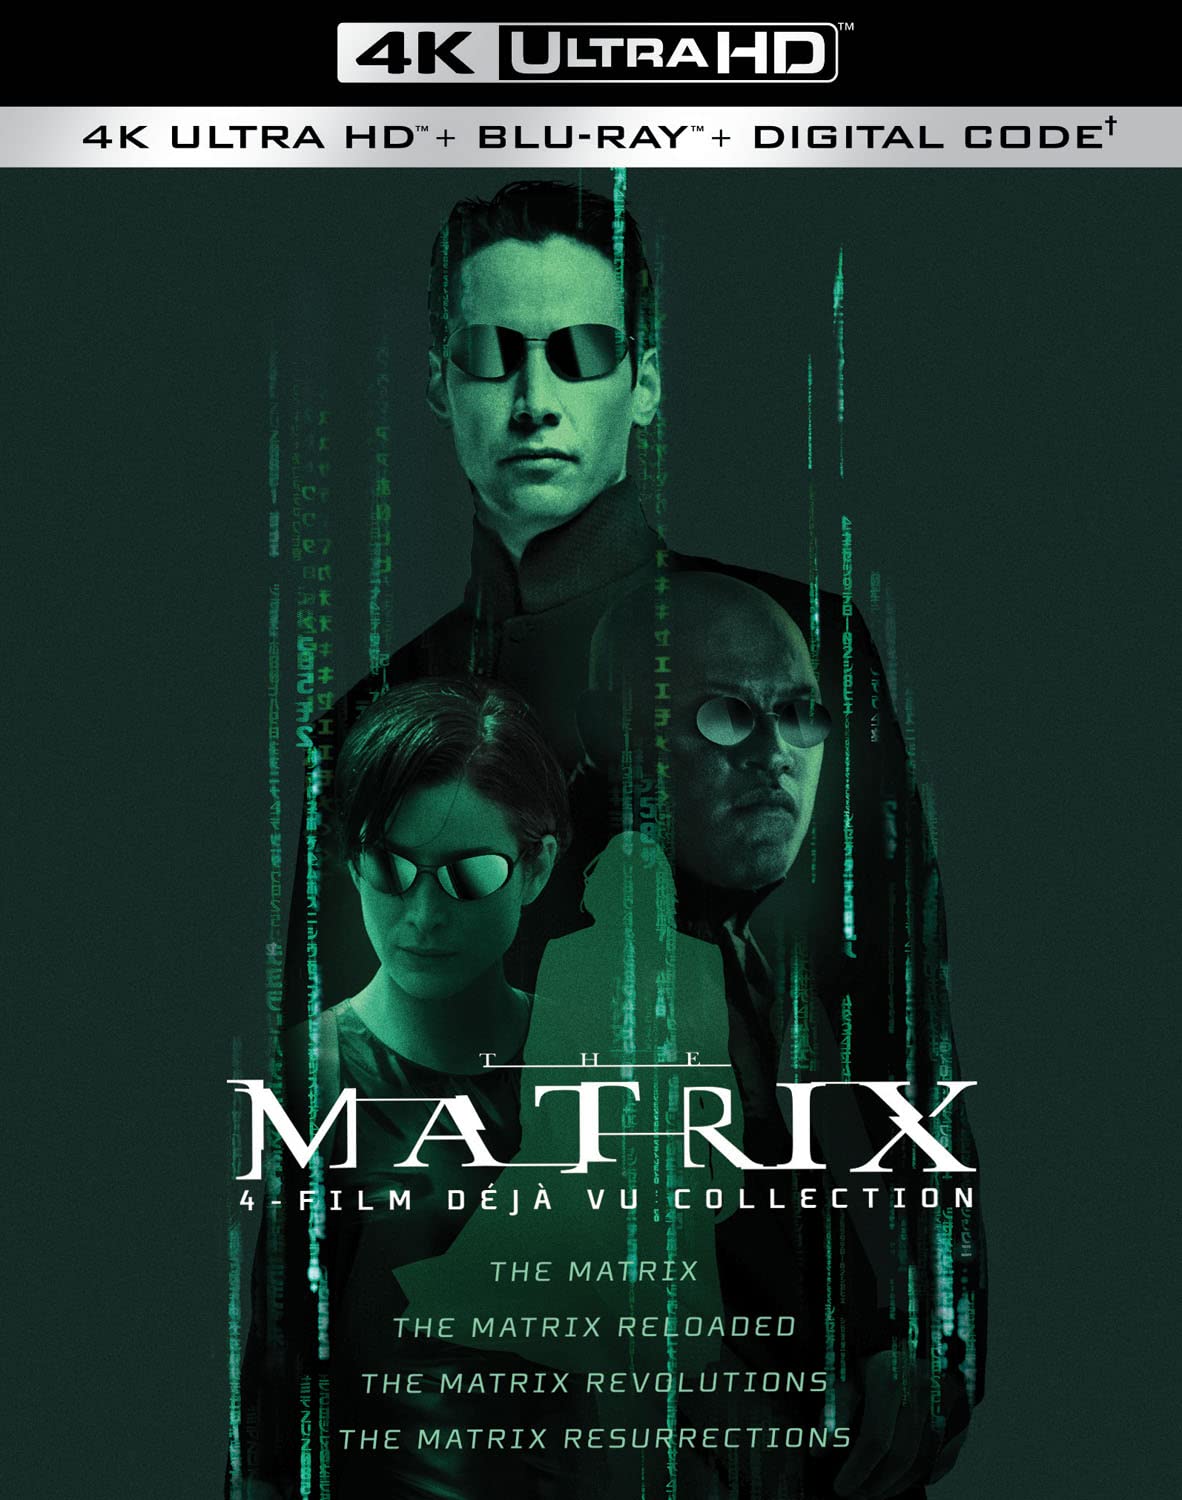 The Matrix 4-Film Déjà Vu Collection 4k Blu-ray